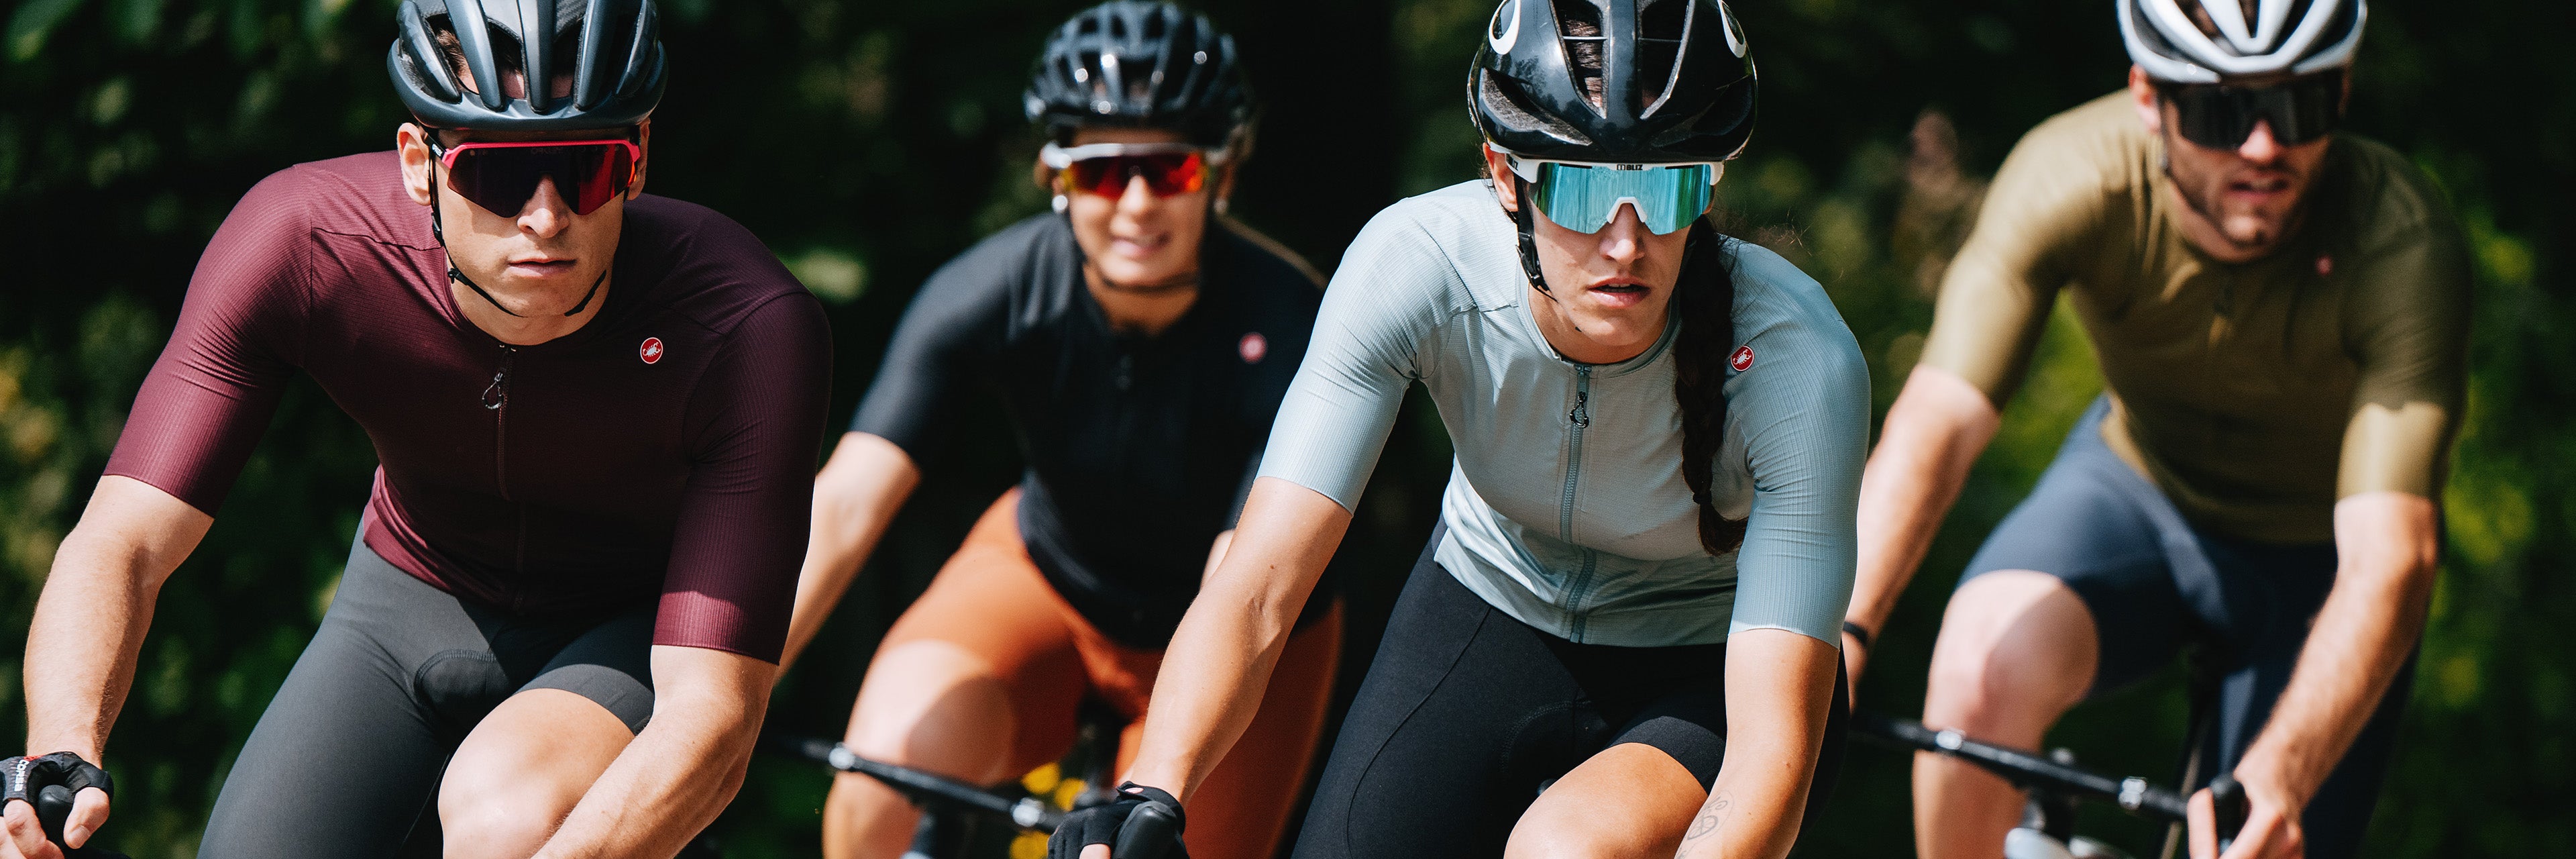 Ter ere van Zich verzetten tegen vermoeidheid Fietskleding kopen | Passion for Cycling – Passion for cycling Shop